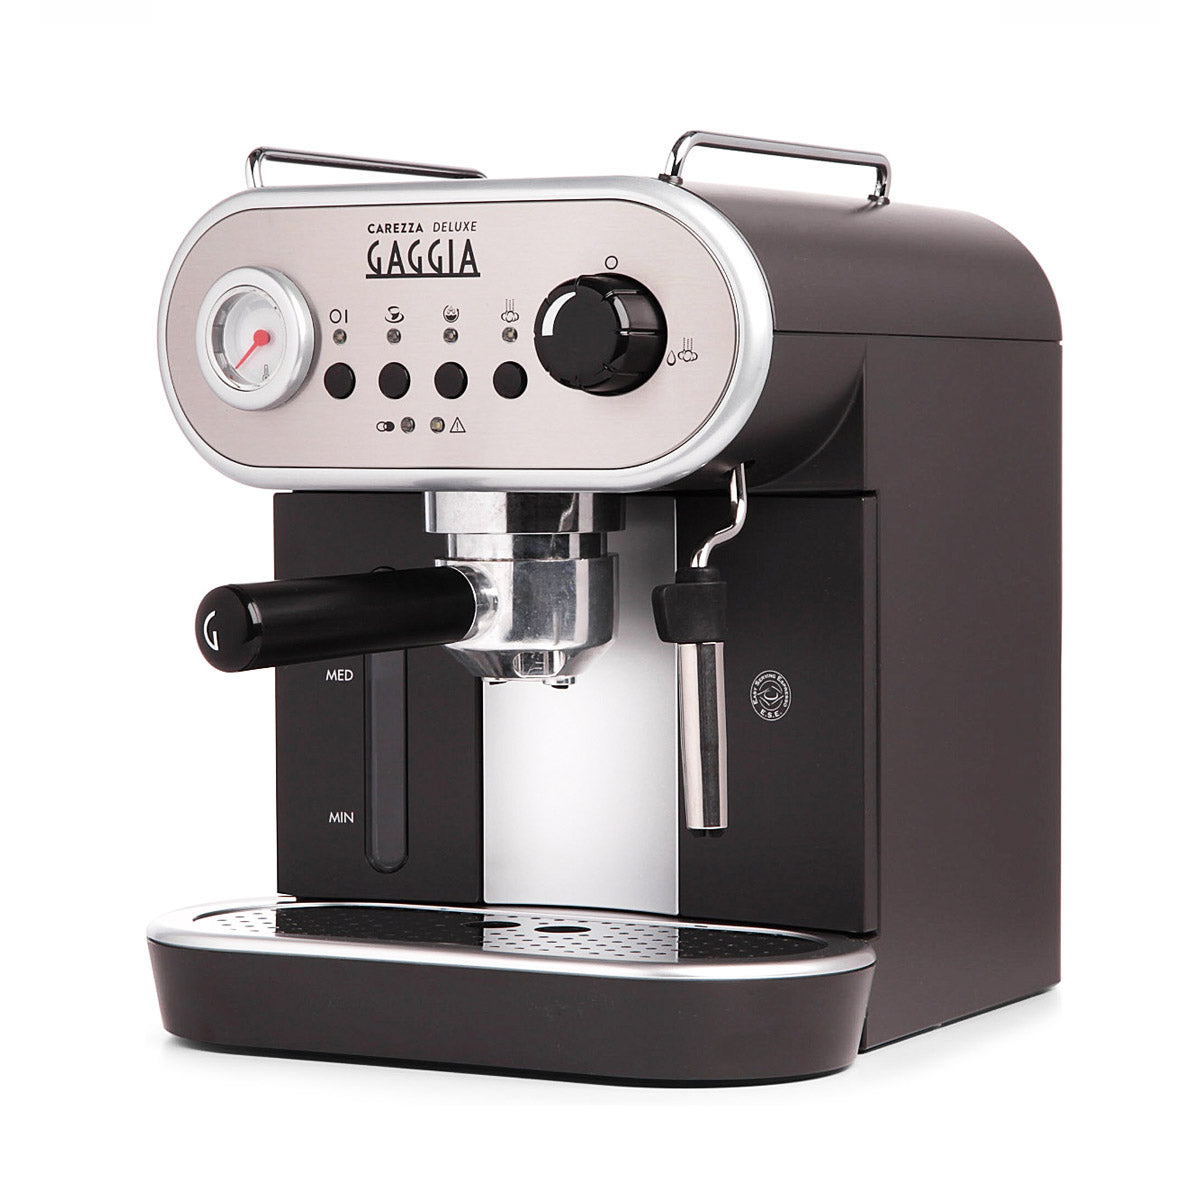 Gaggia, Carezza Deluxe, Pump Espresso Machine